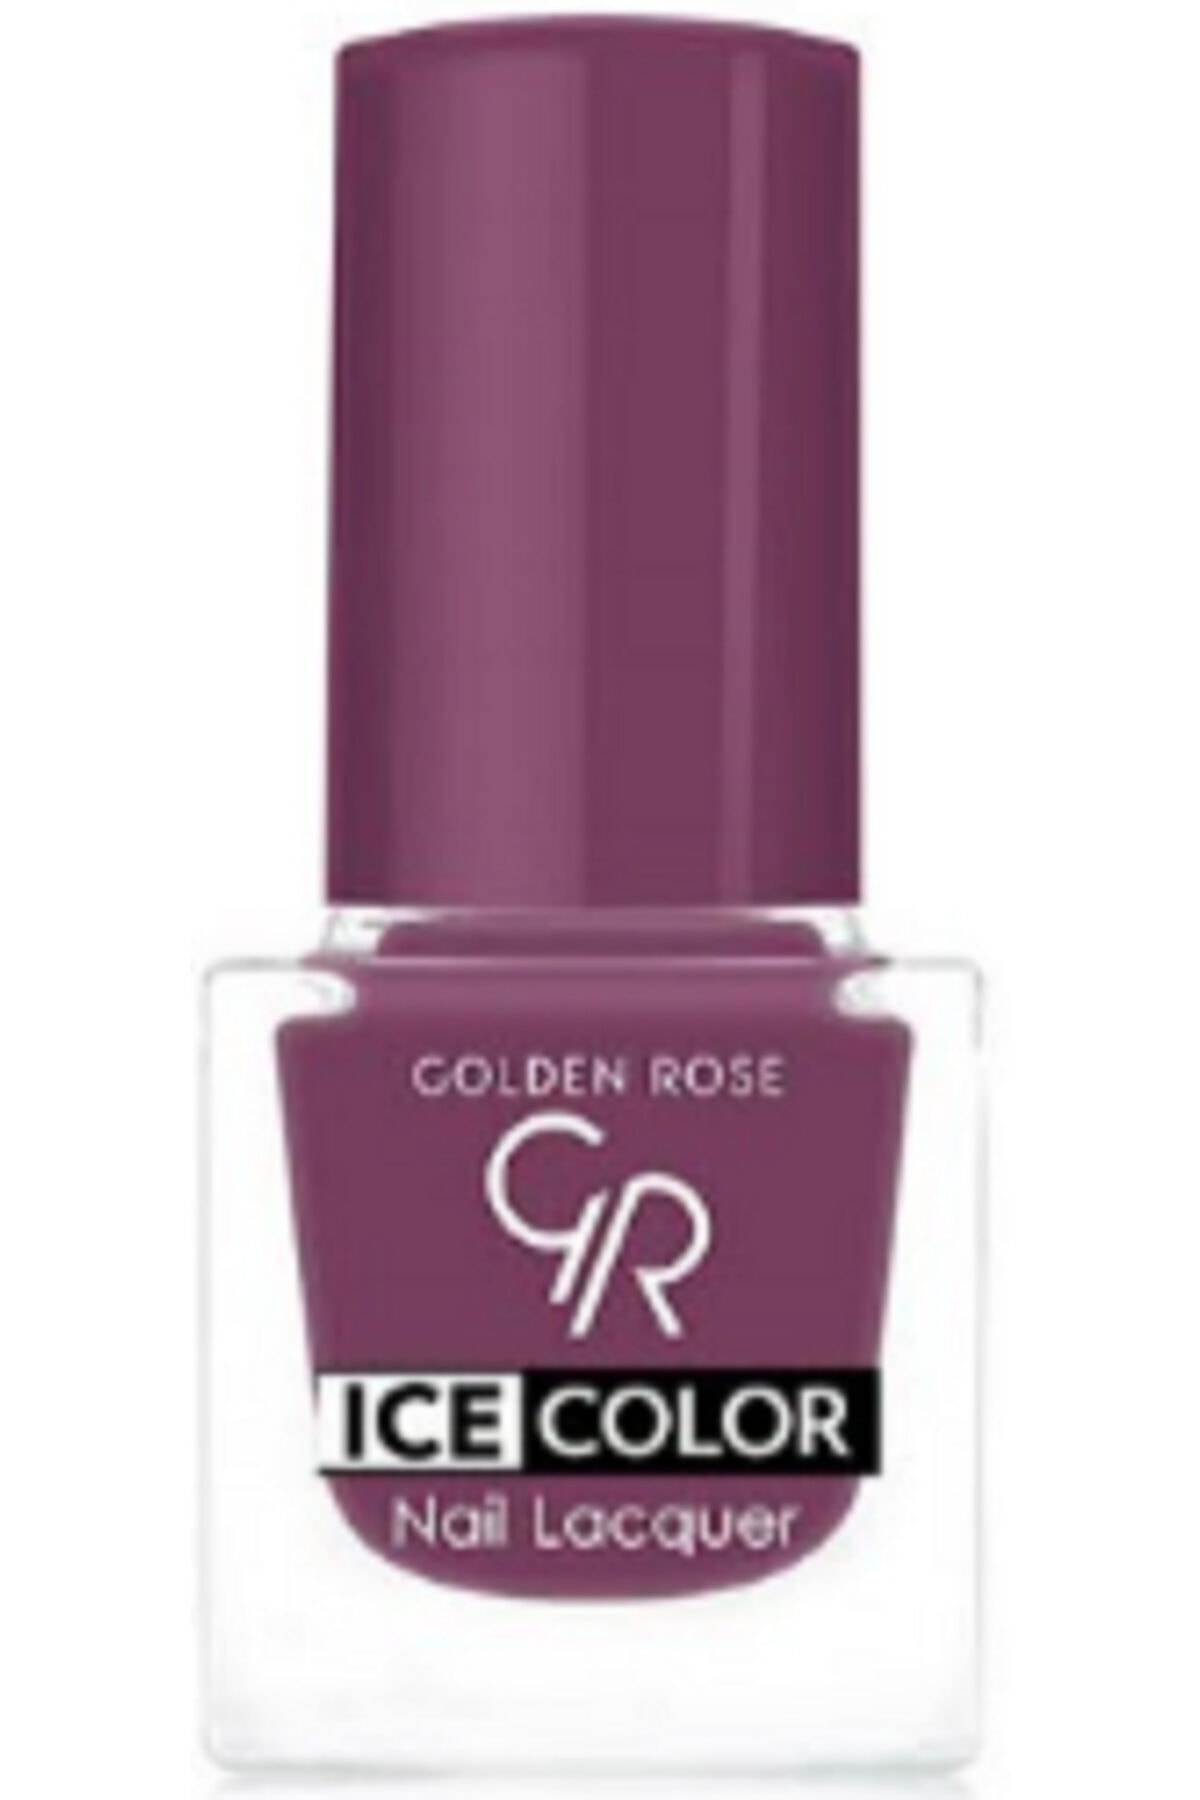 لاک ناخن یخی آیس چیک ICE شماره 115 رنگ صورتی گلدن رز Golden Rose